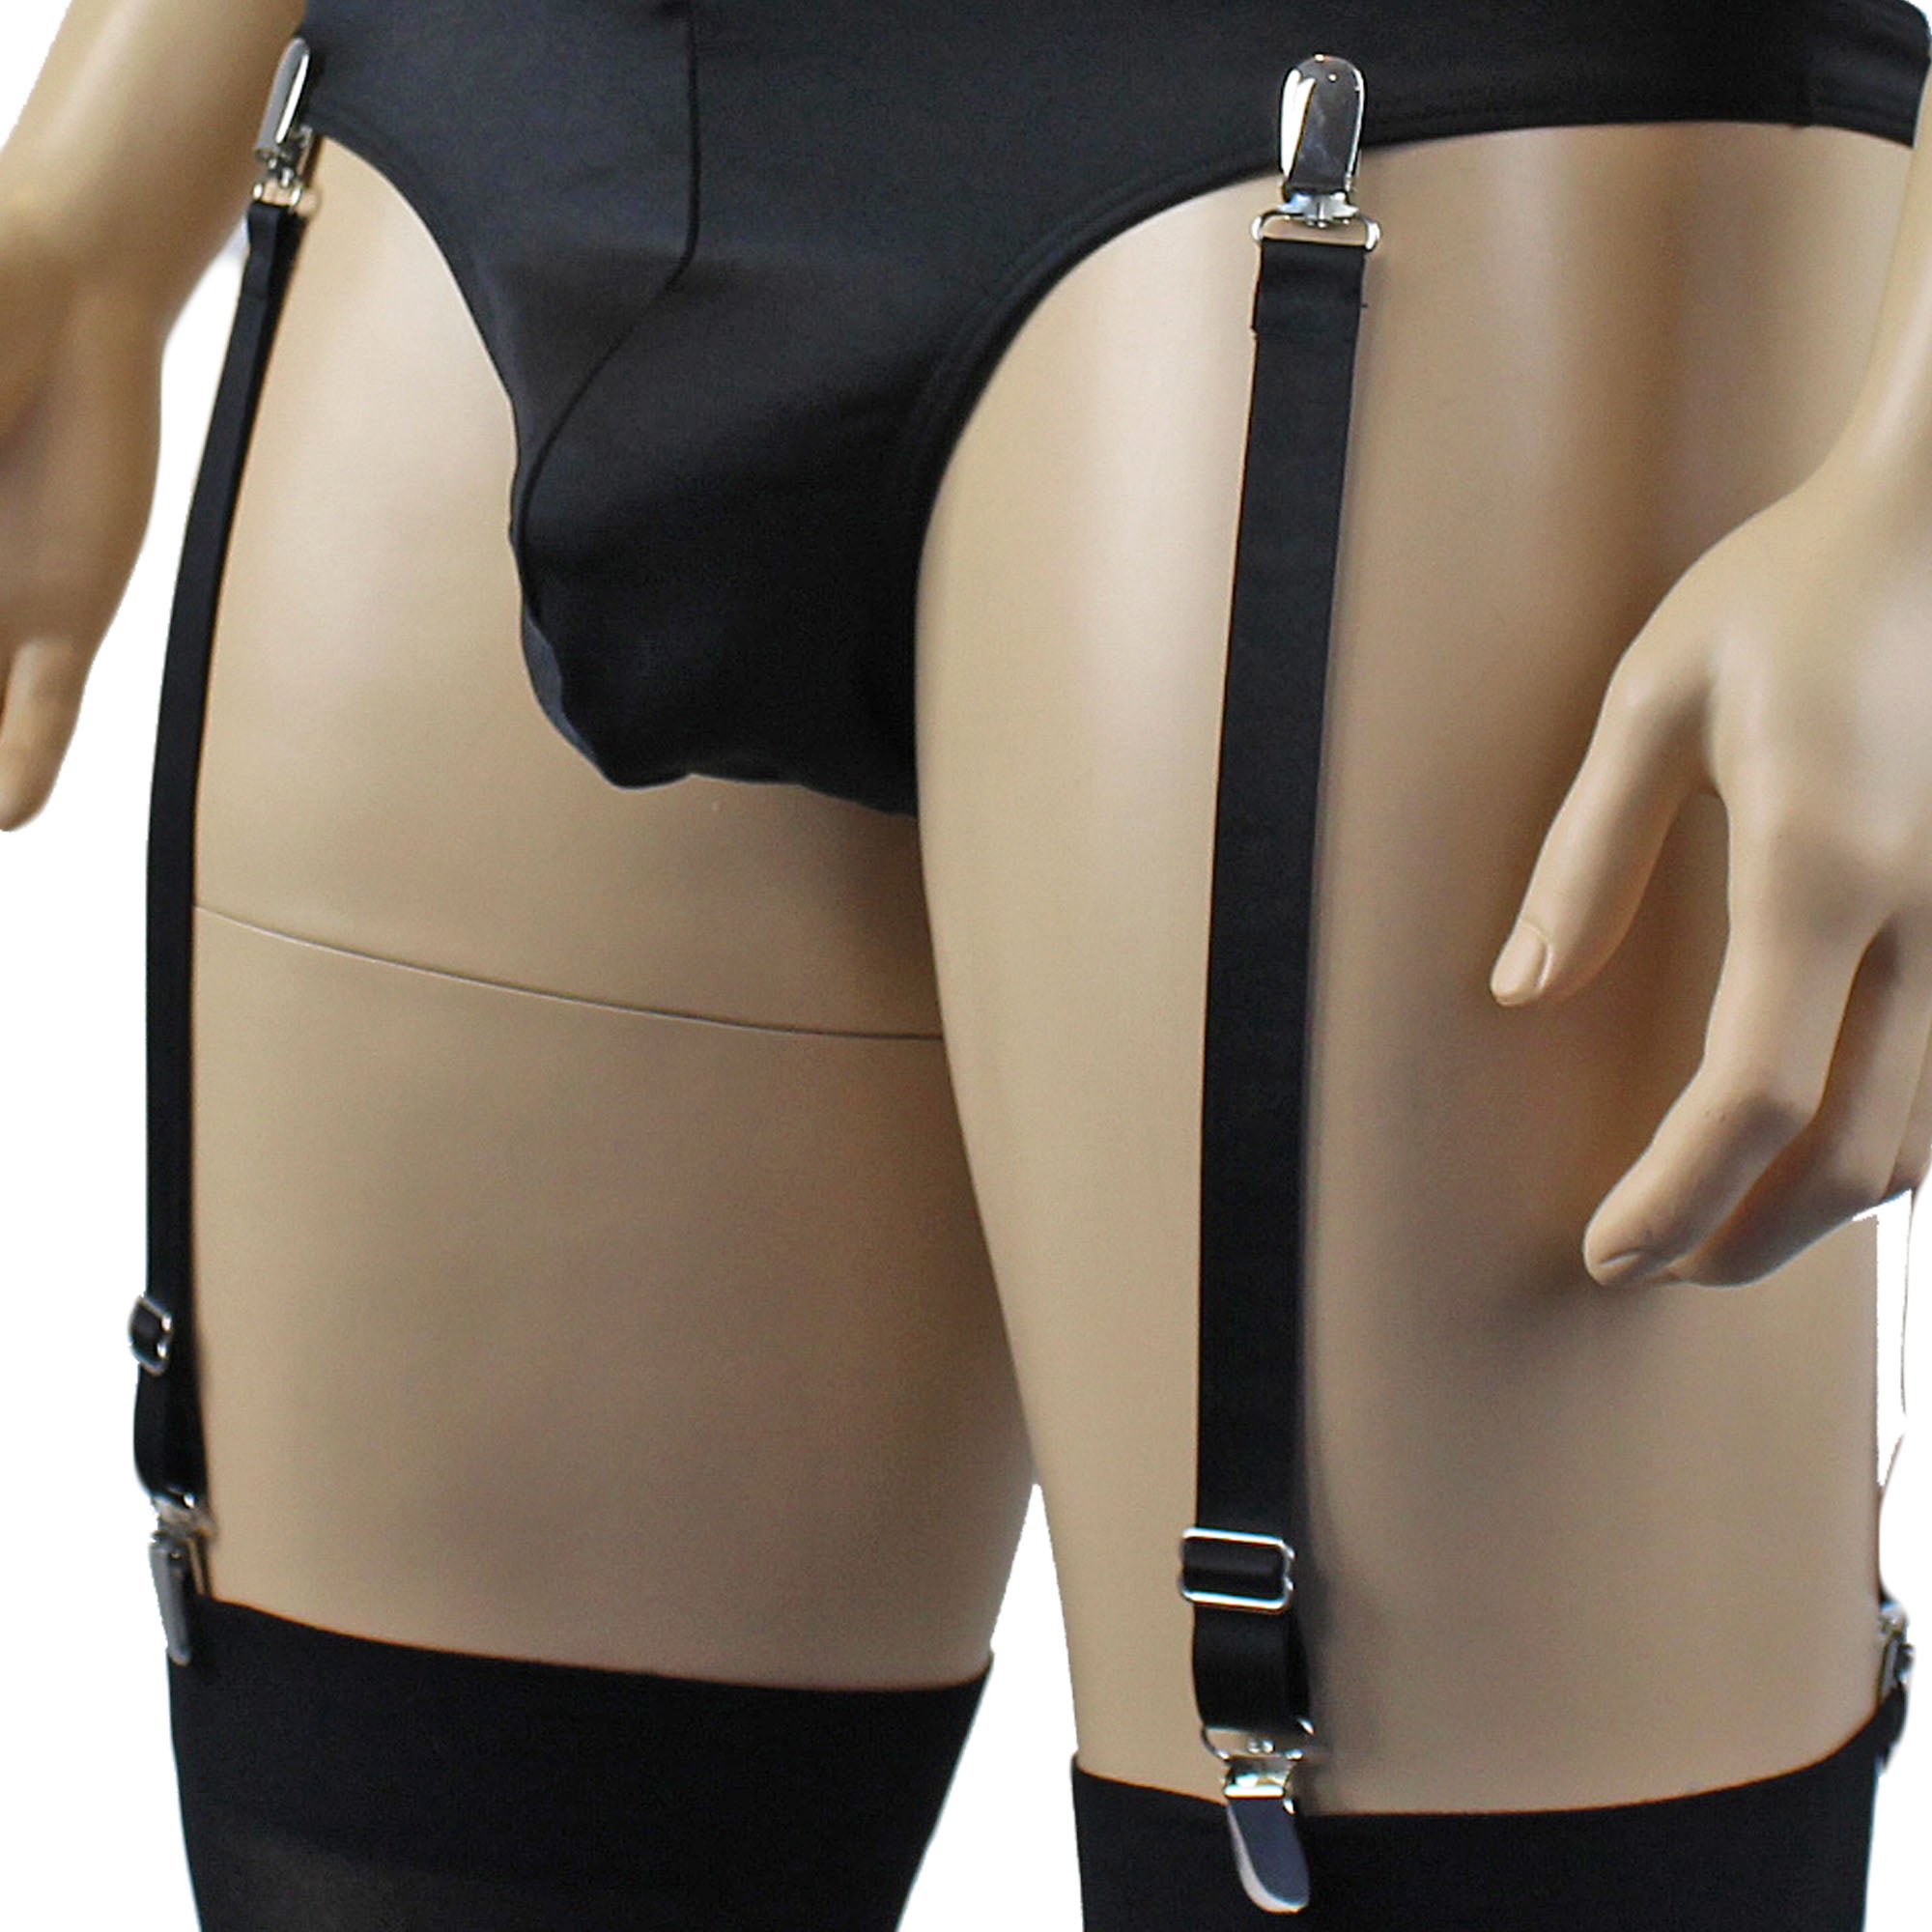 Zoe Detachable Adjustable Garters with Metal Clips Black